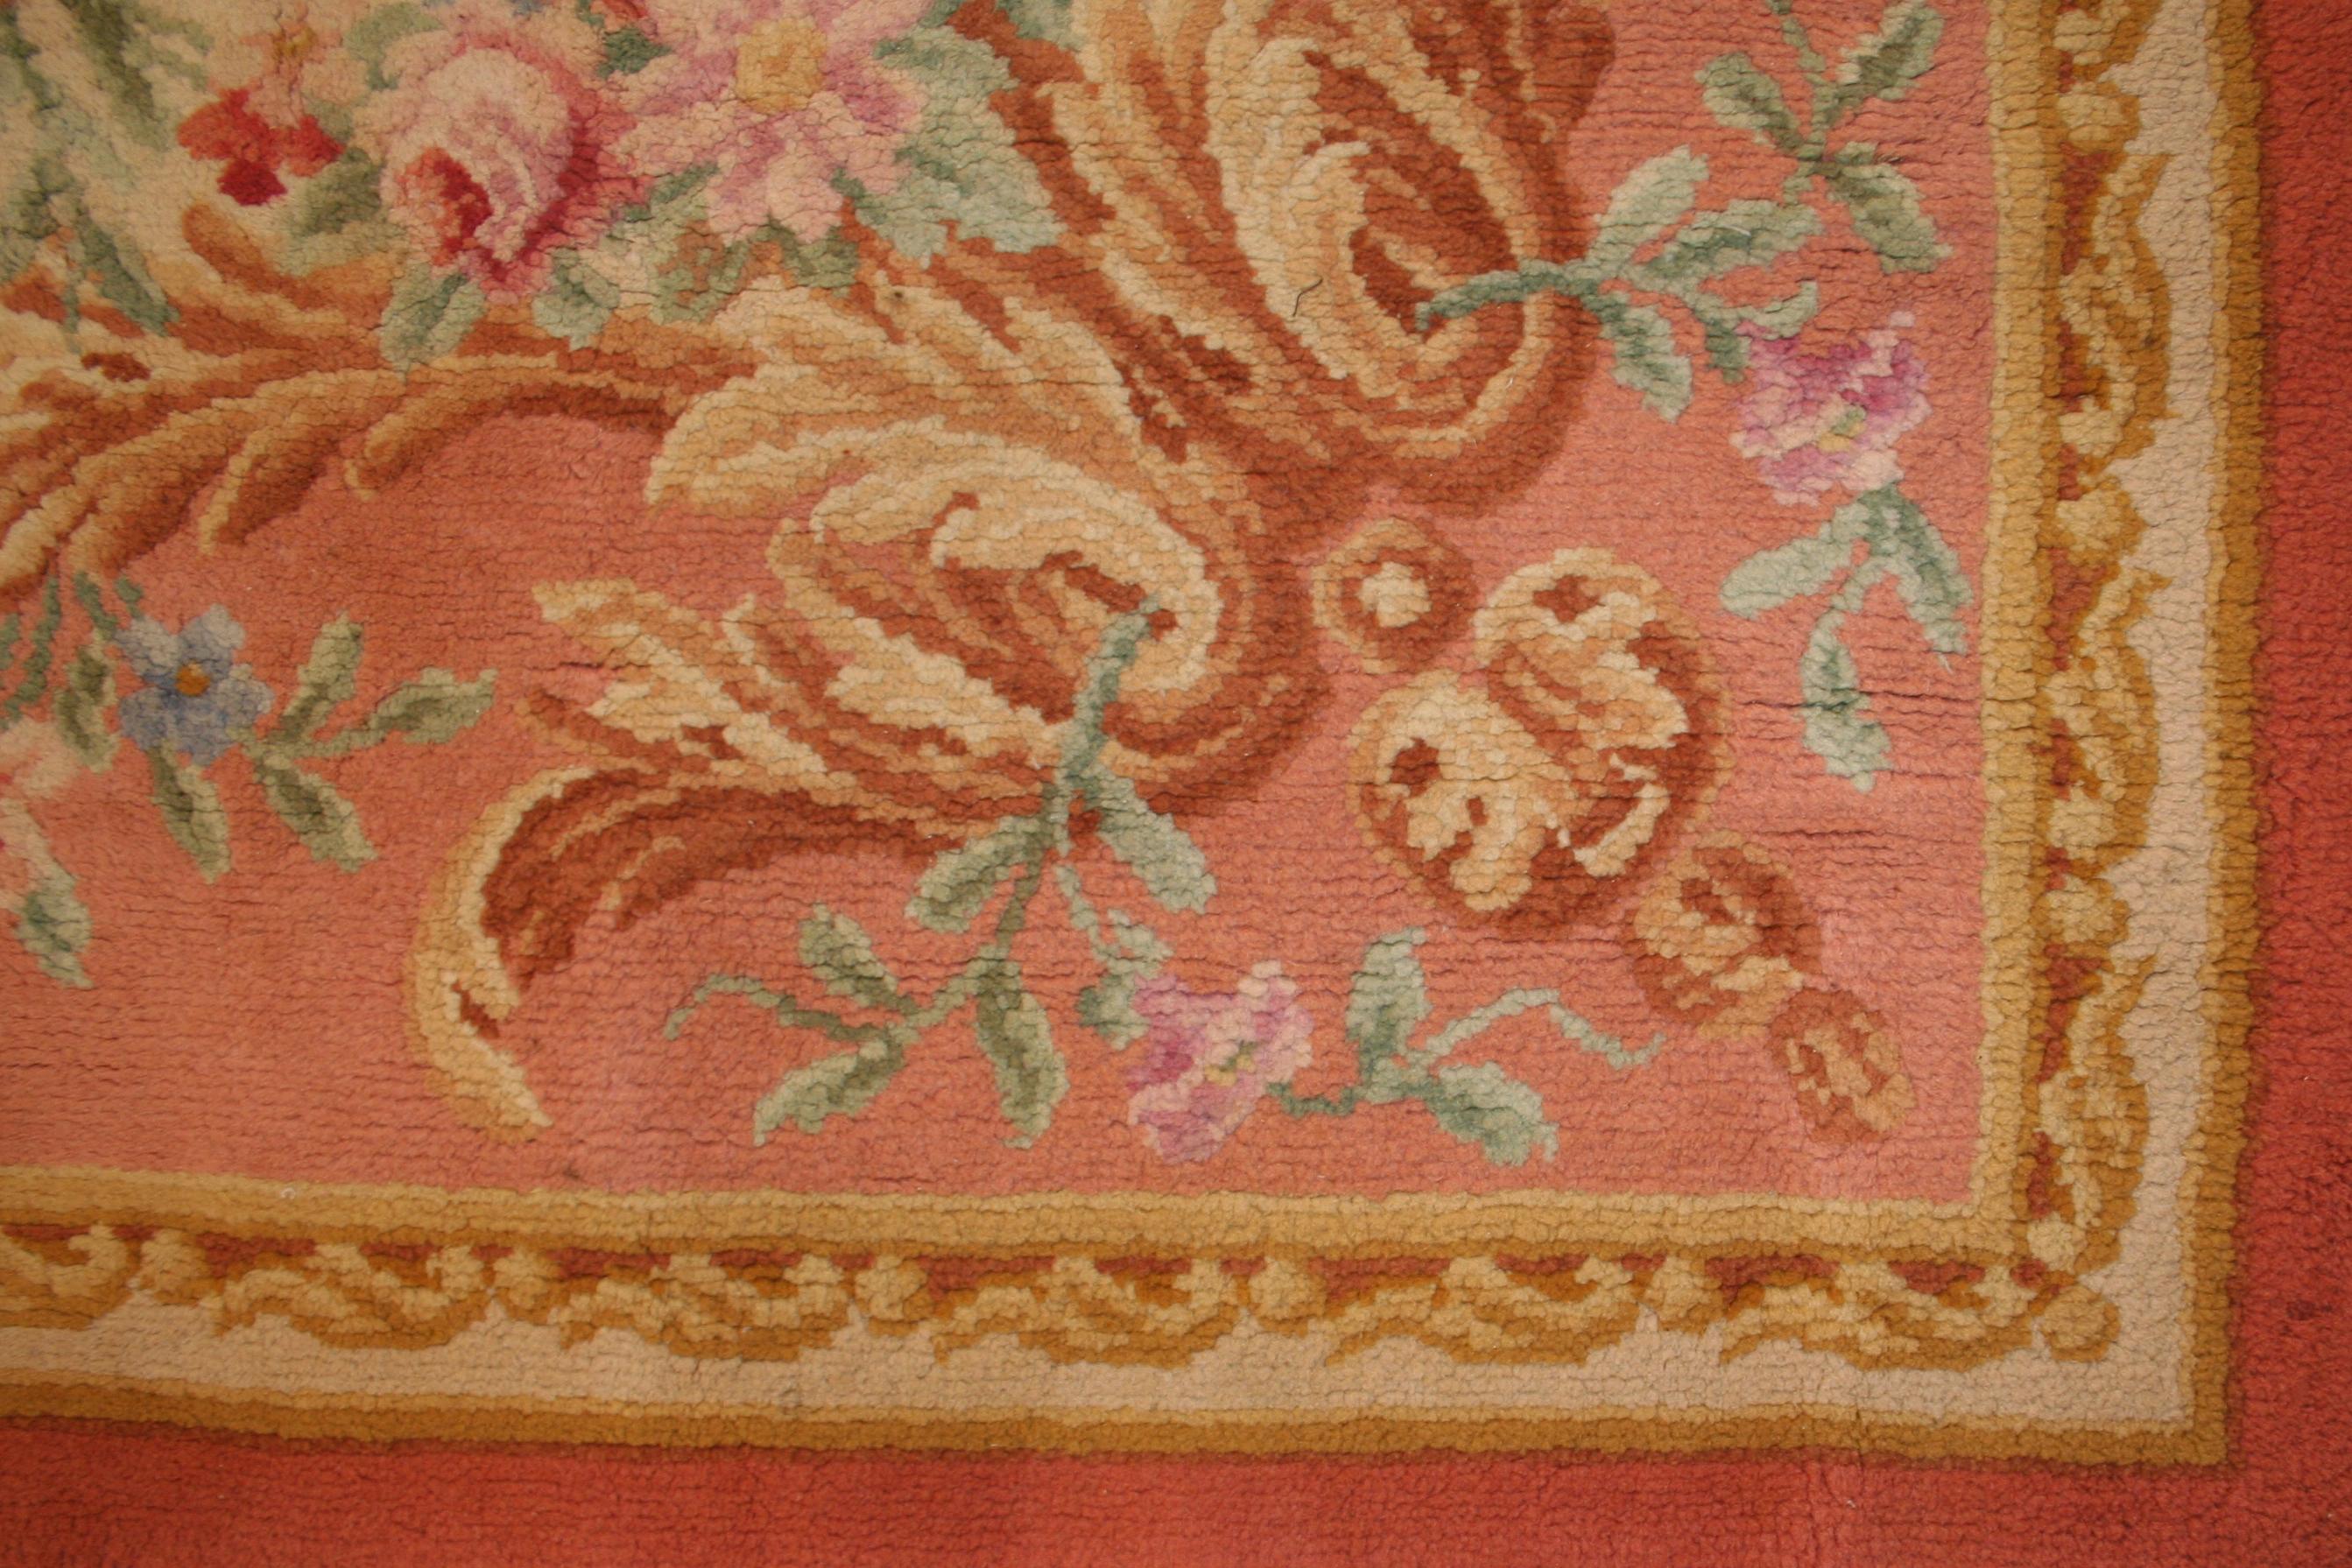 Dieser antike französische Savonnerie-Teppich zeichnet sich durch einen elfenbeinfarbenen Hintergrund aus, der von floralen Elementen in Pastelltönen unterbrochen wird. Er ist charakteristisch für den spätbarocken Stil, der in Frankreich zur Zeit